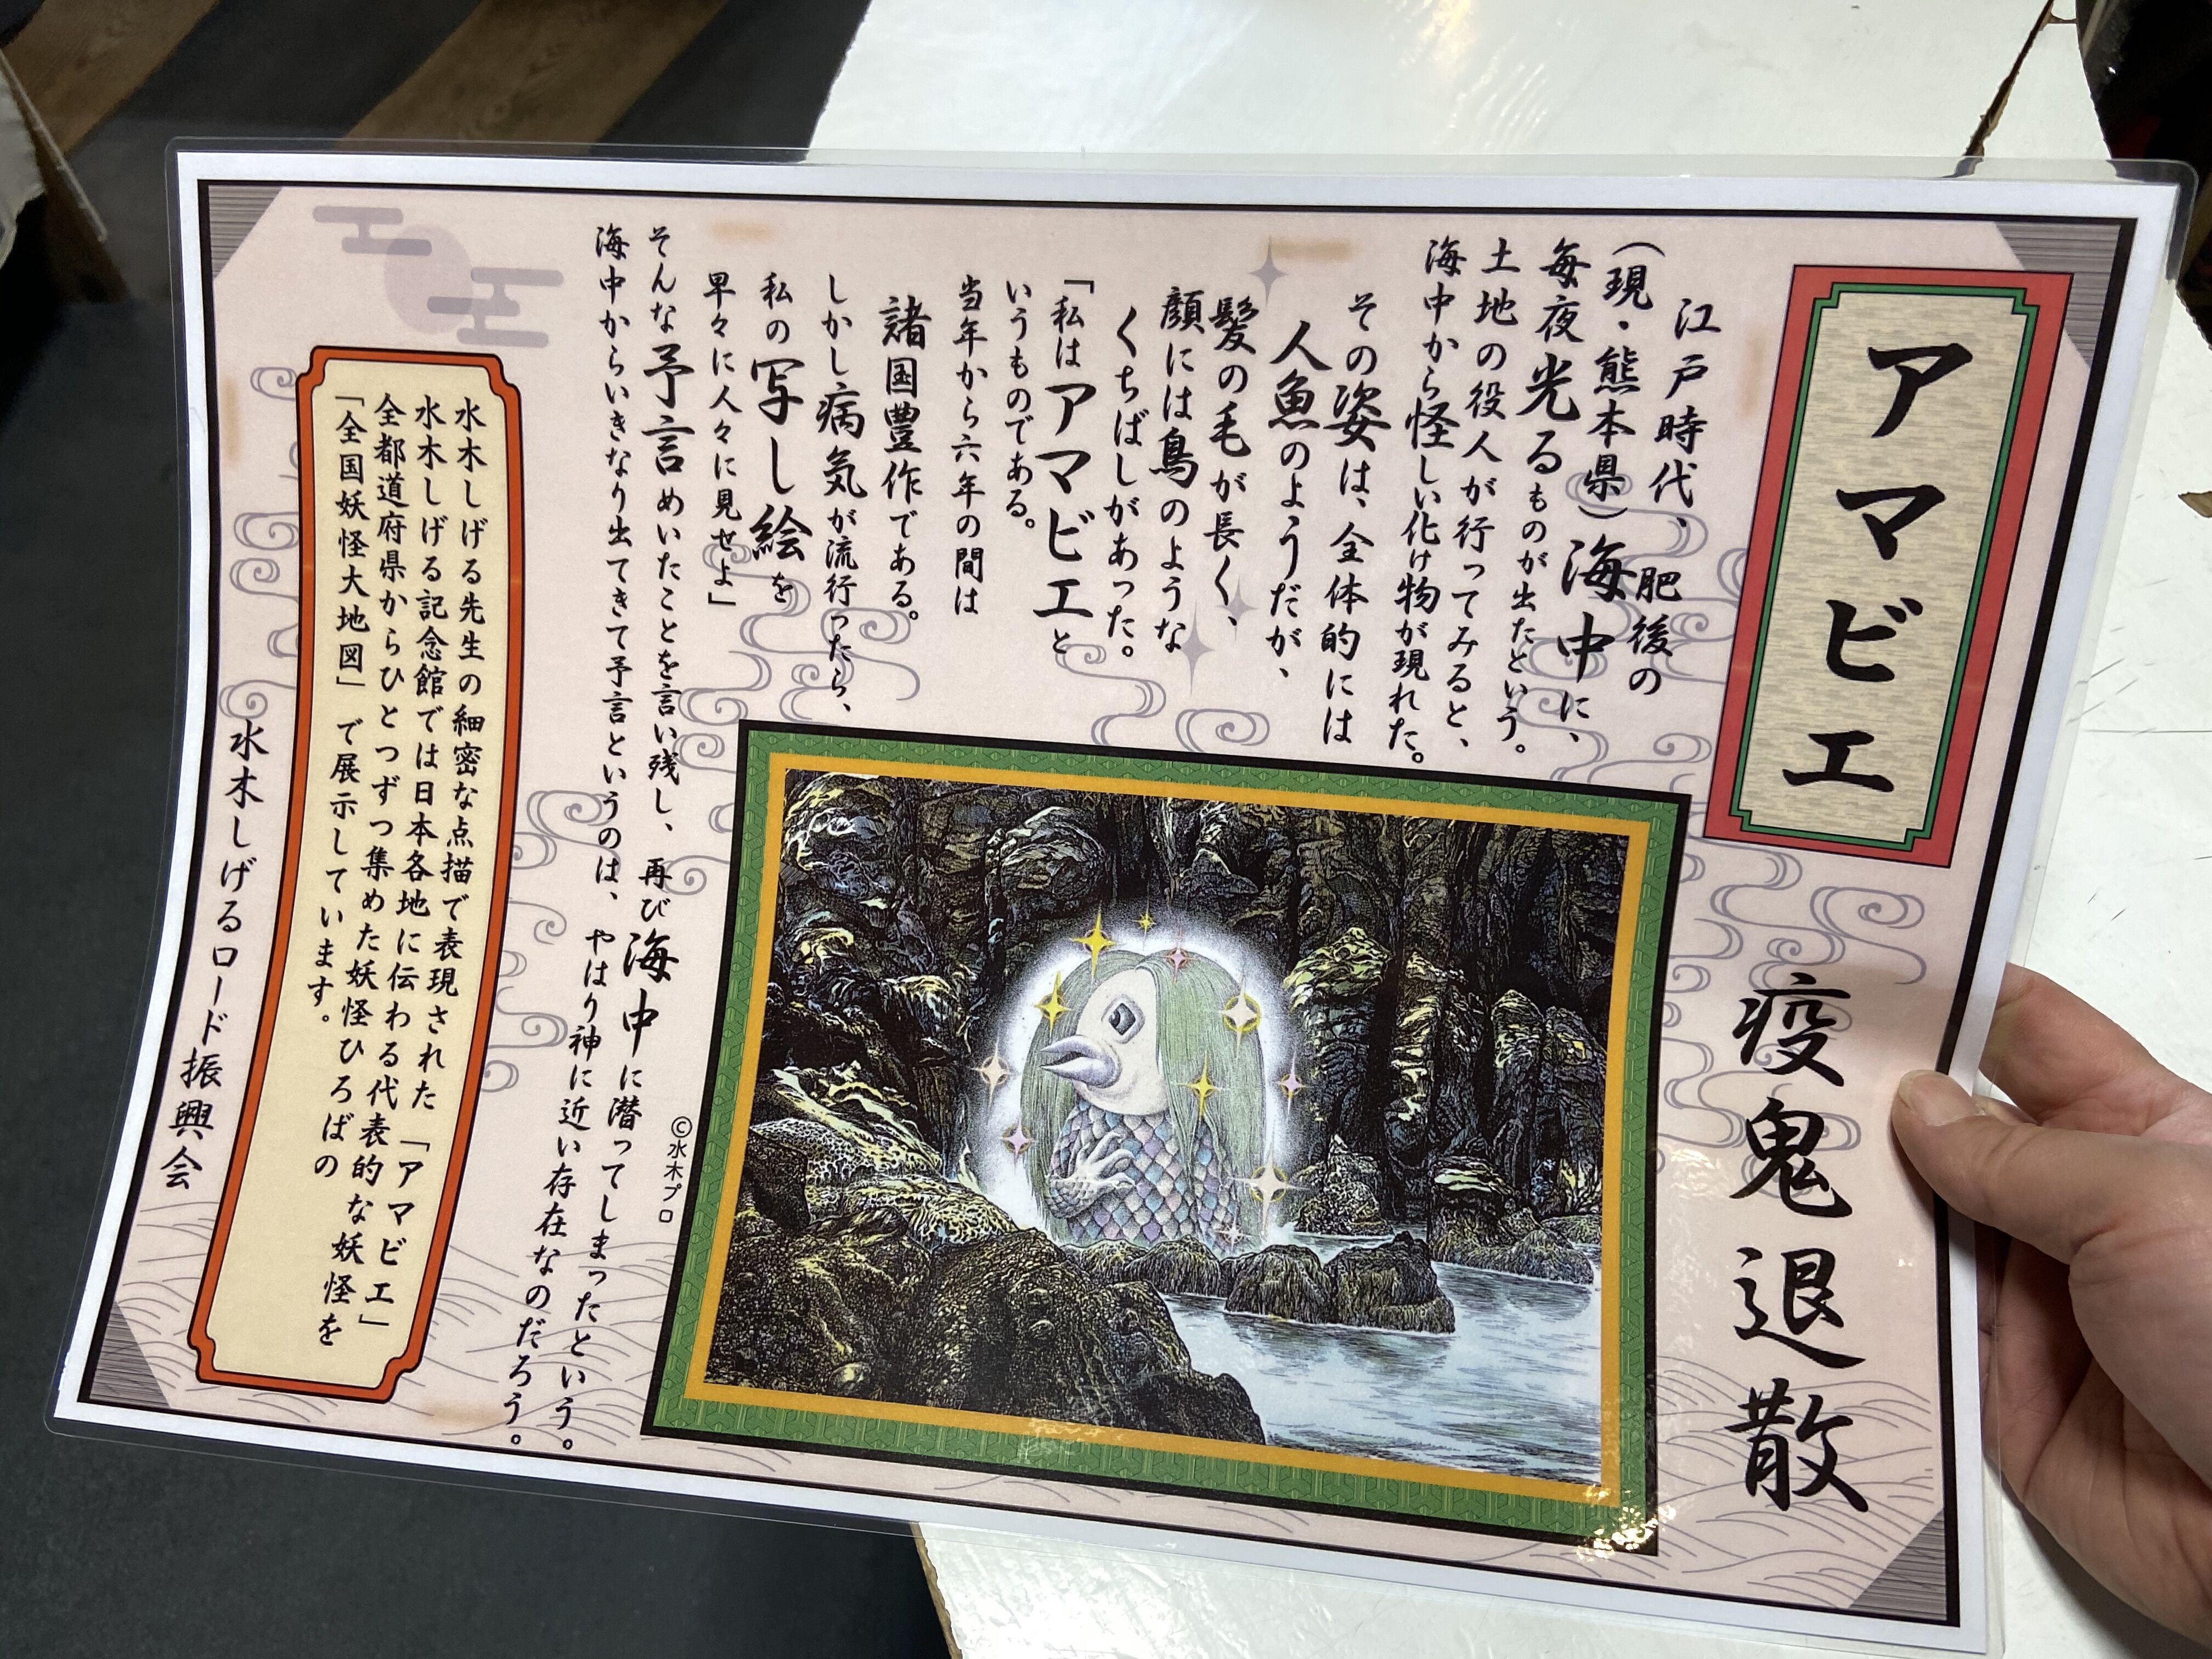 水木しげる記念館 6 1日より営業再開されました 水木しげるロード 妖怪神社スタッフのブログ